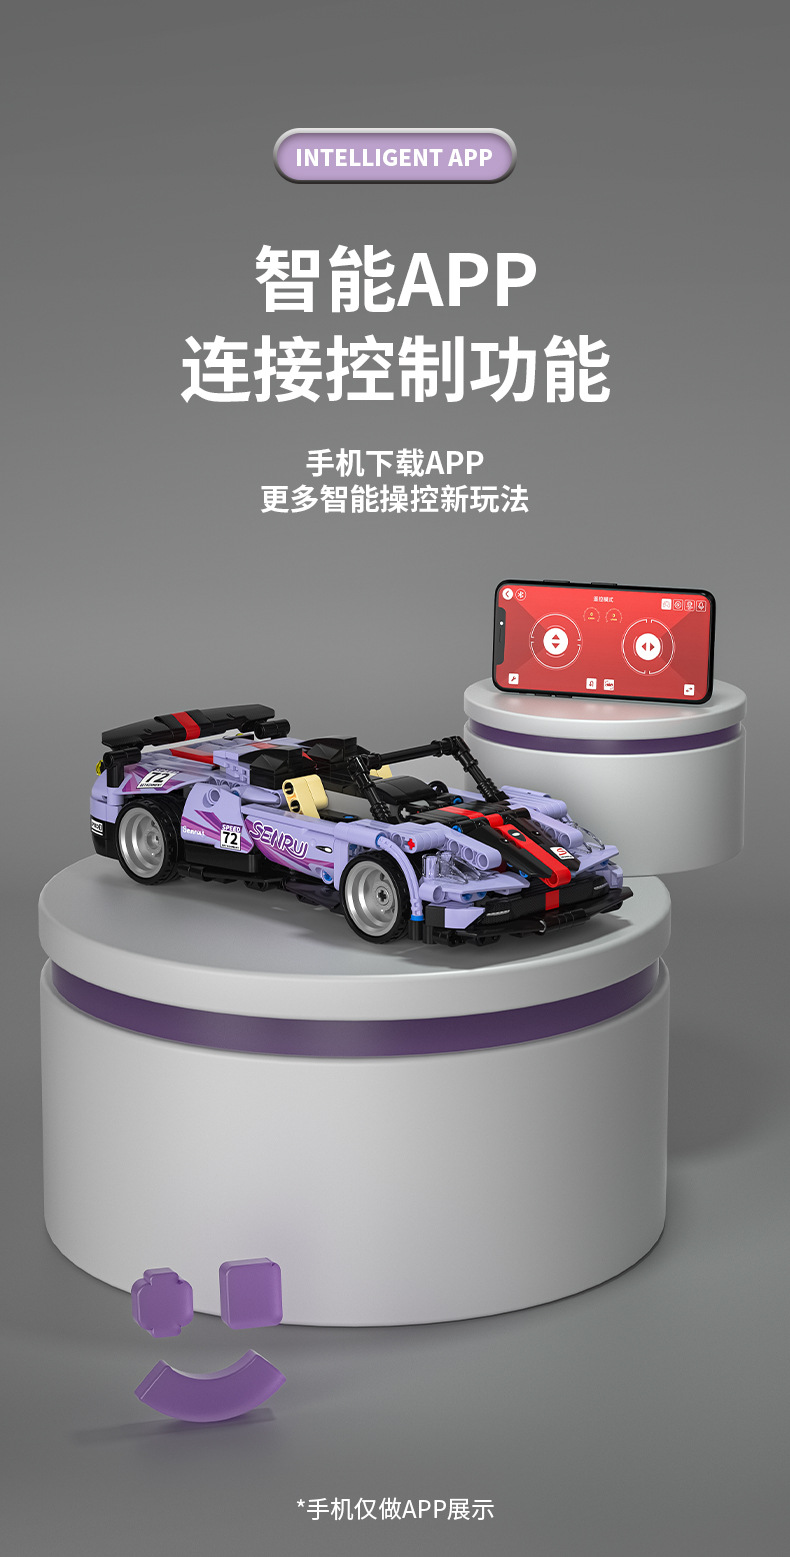 SEMBO 701908 Remote Control Purple Fengshen Sports Car